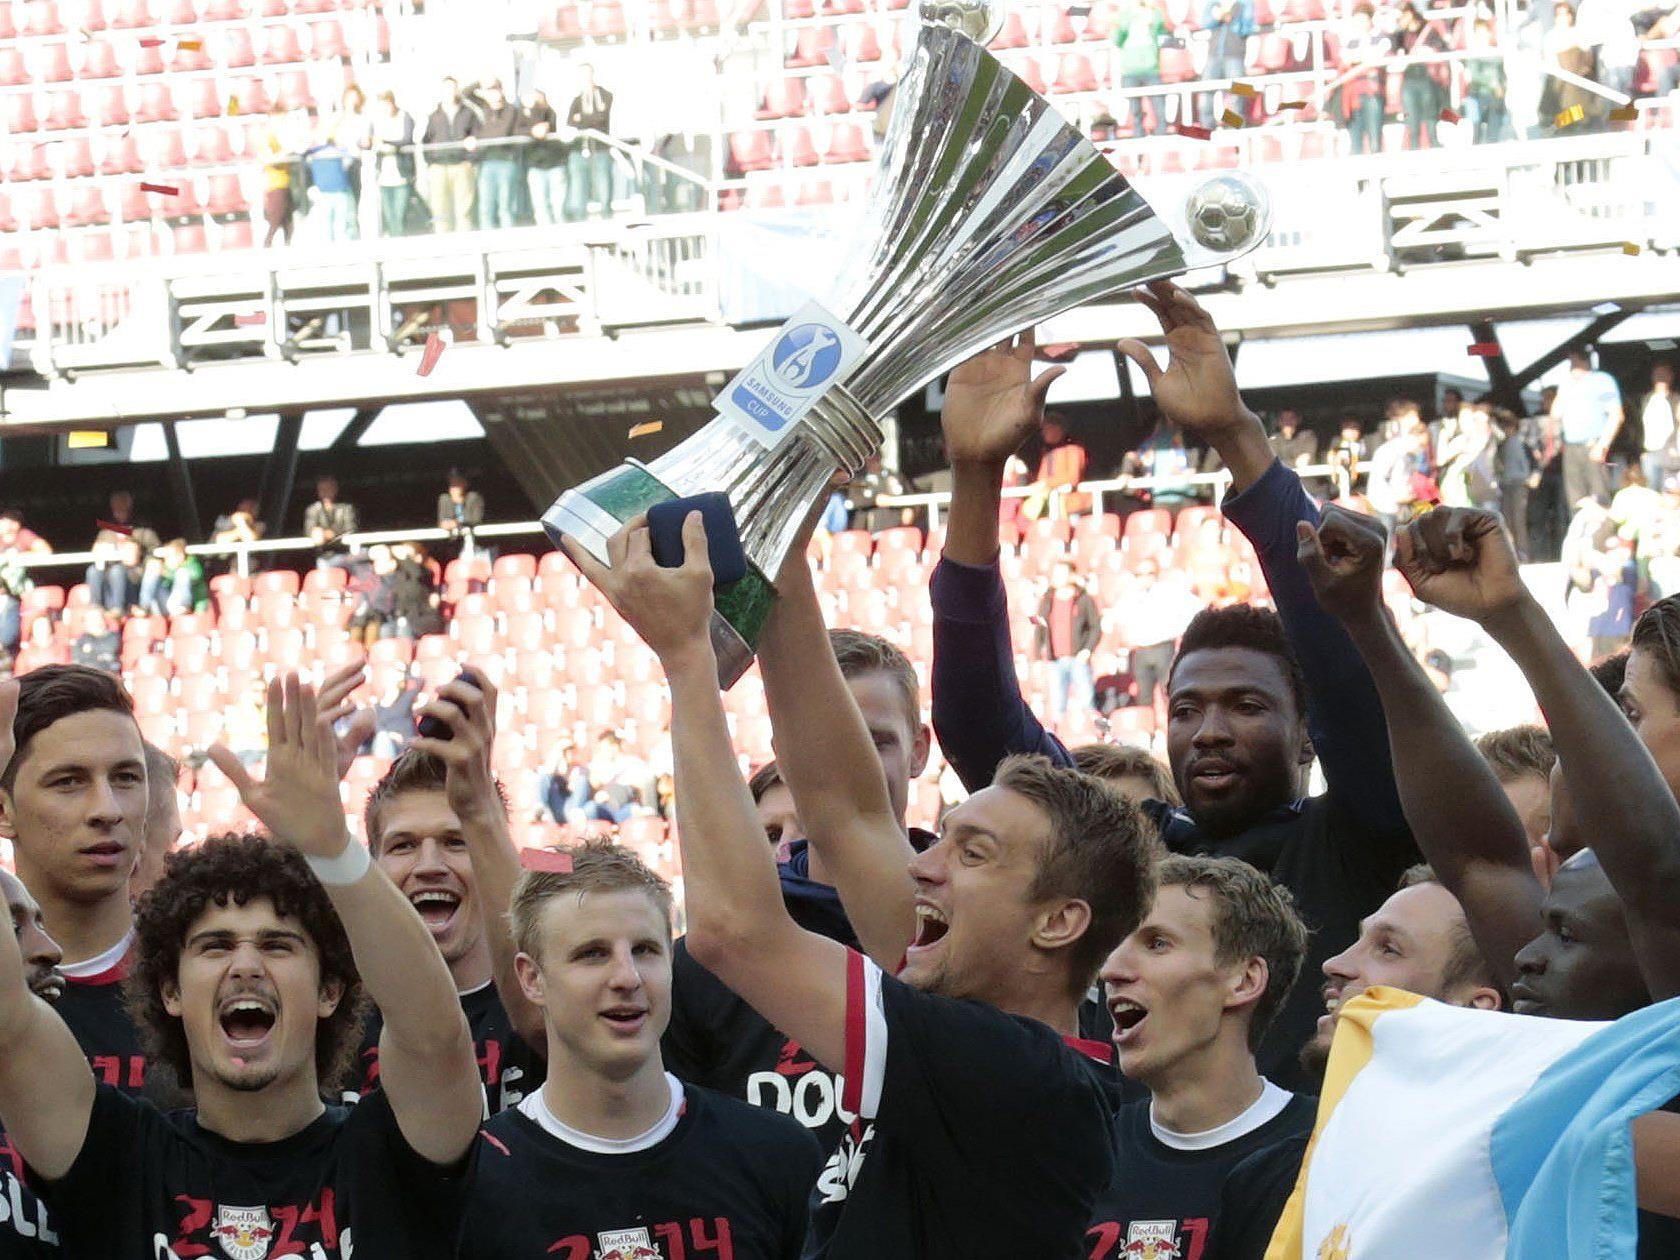 Titelverteidiger Red Bull Salzburg, Rapid Wien und Austria Wien im Cup gefordert.